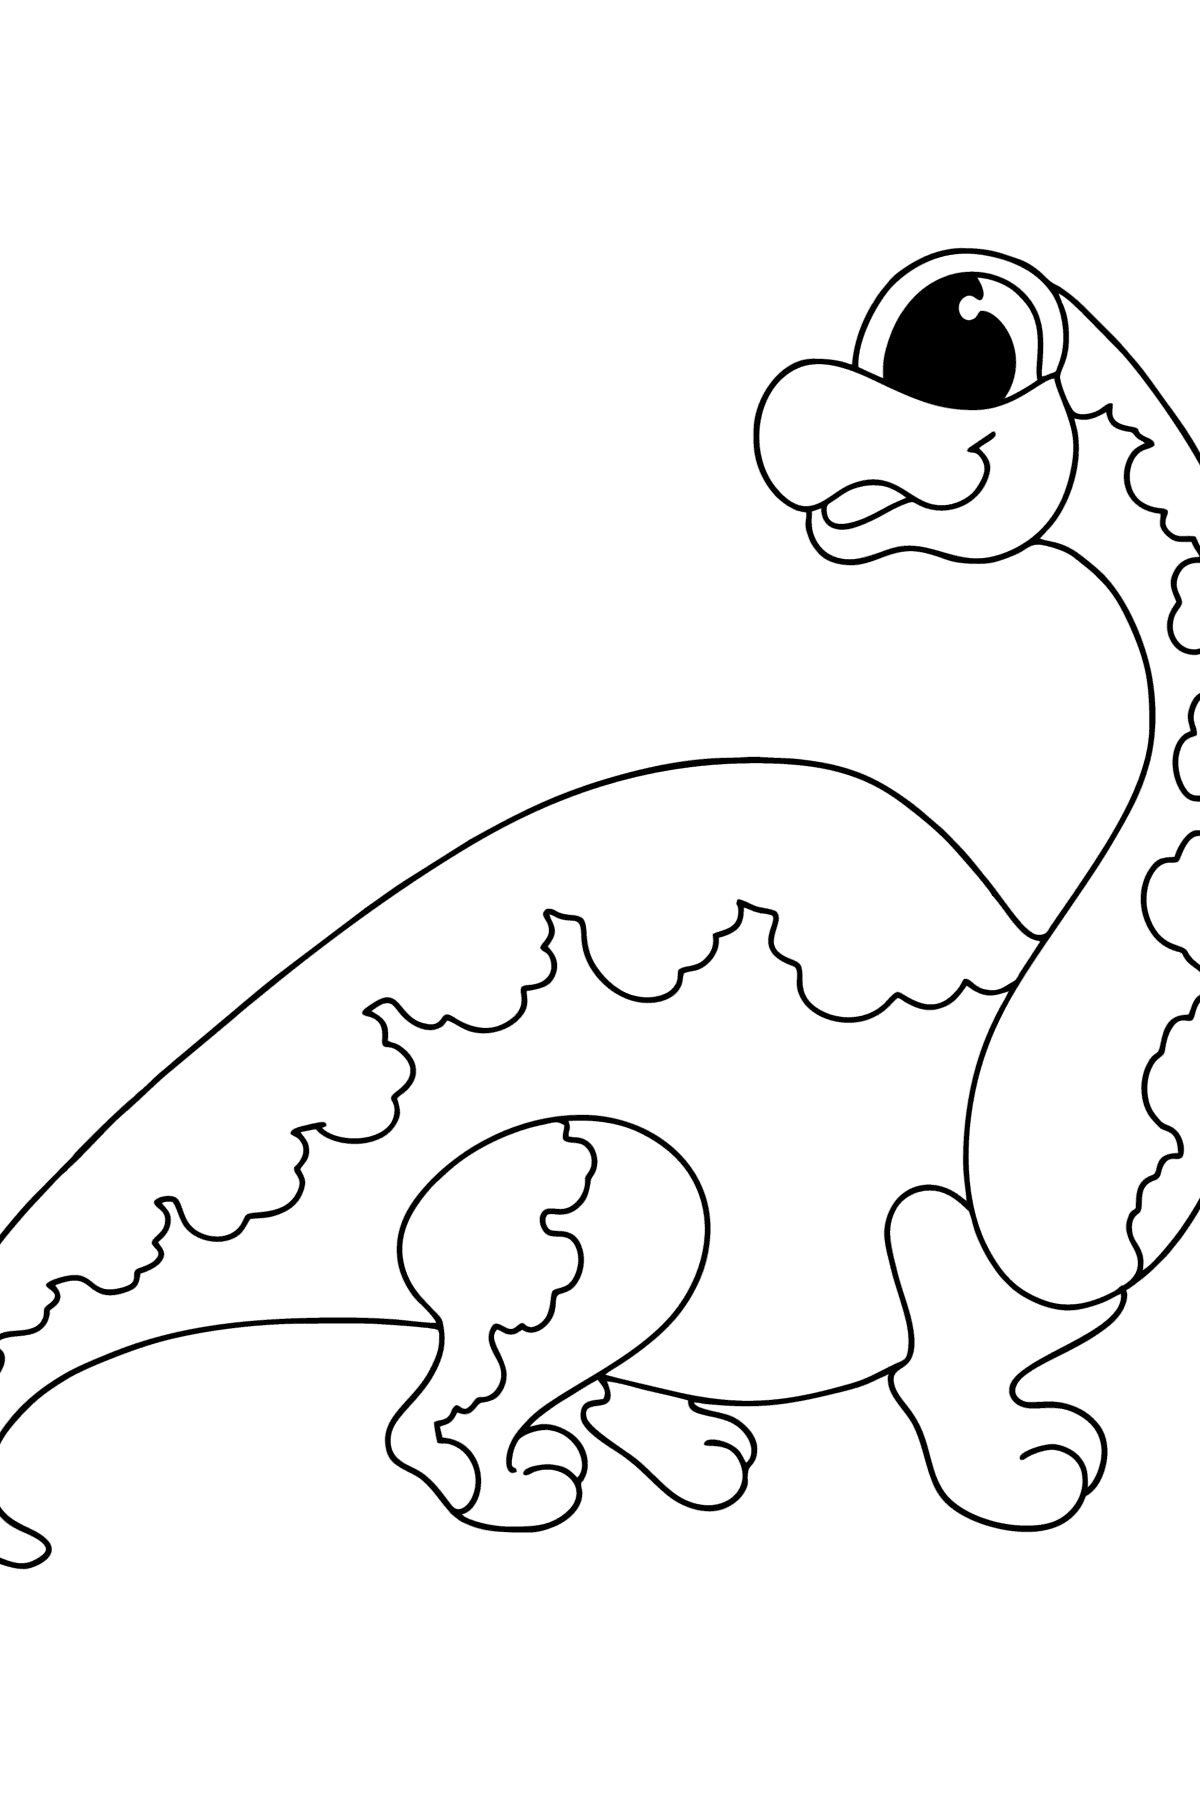 Tegning til fargelegging brachiosaurus - Tegninger til fargelegging for barn